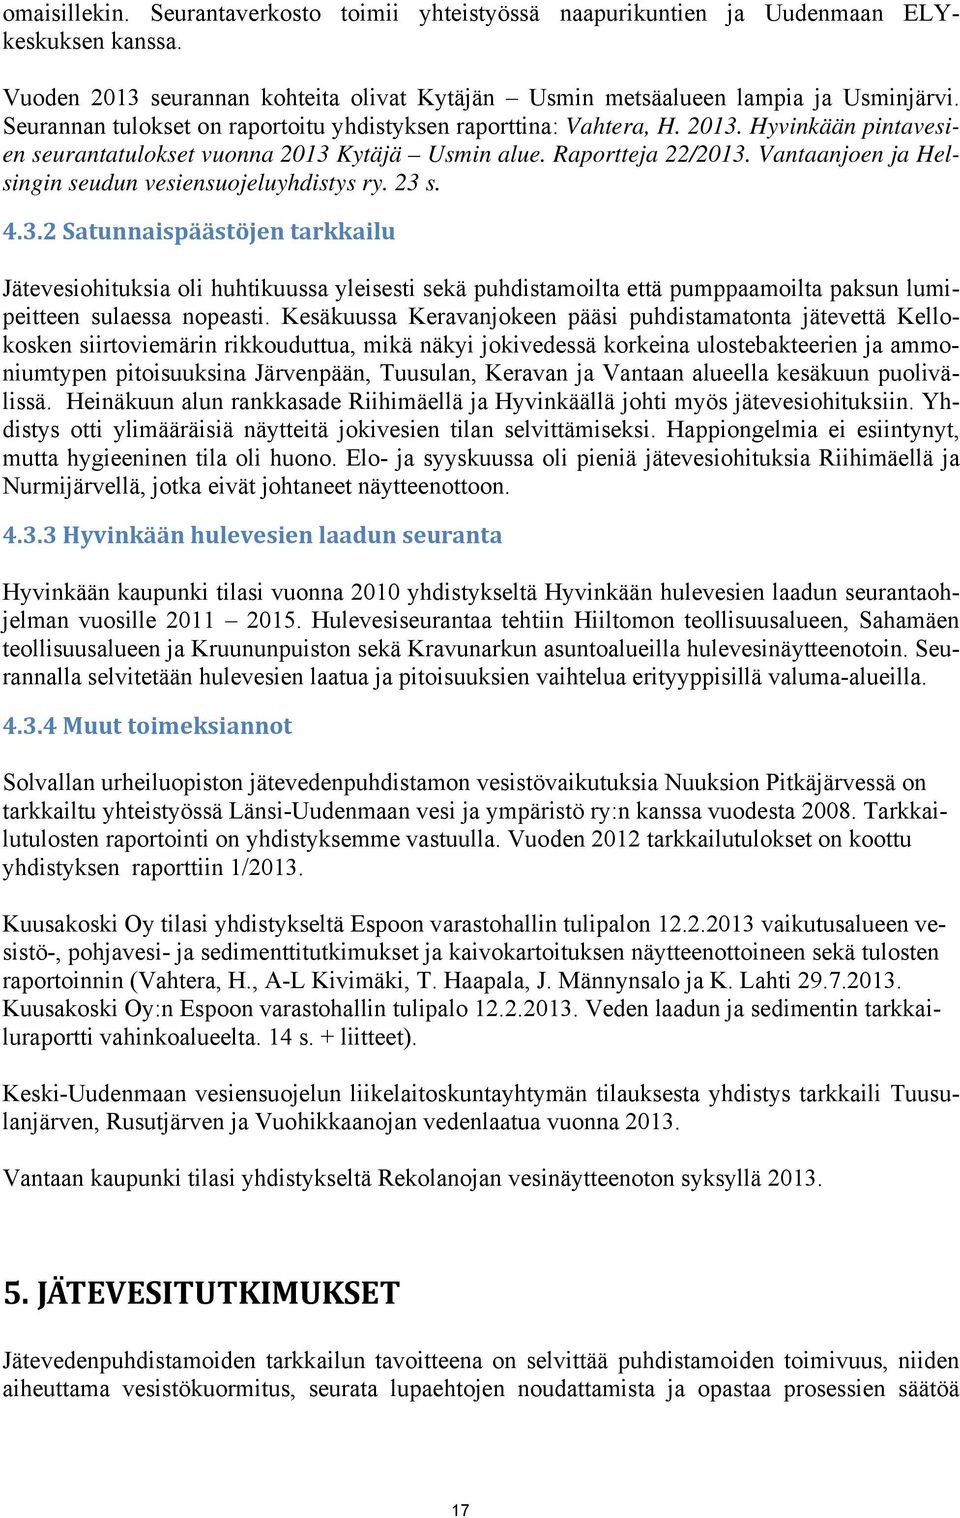 Vantaanjoen ja Helsingin seudun vesiensuojeluyhdistys ry. 23 